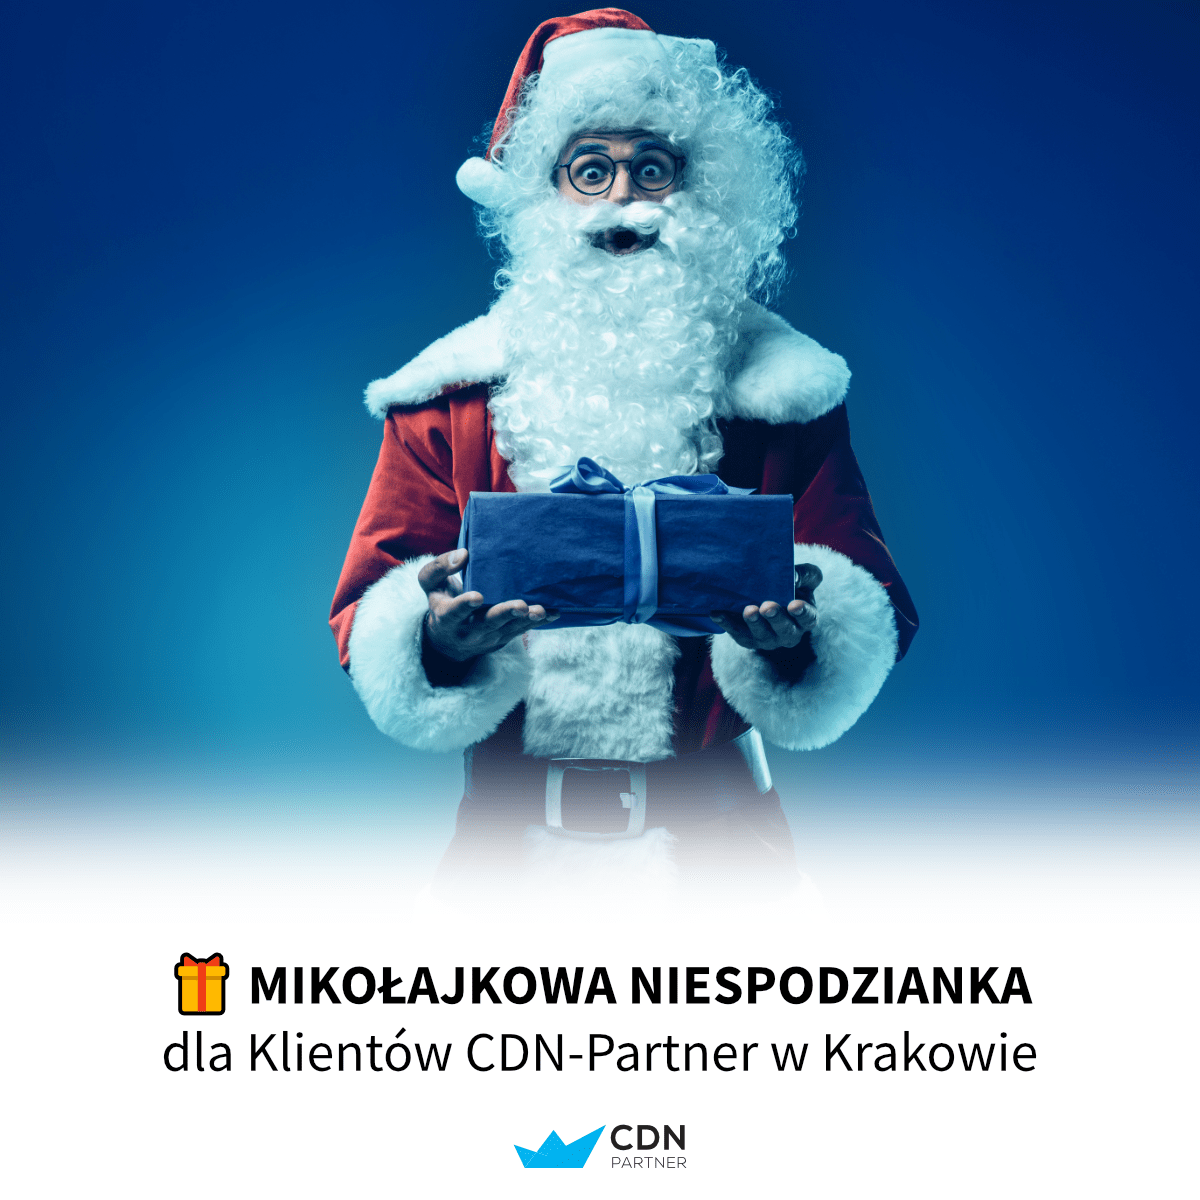 Mikolajkowa Niespodzinka dla klientów CDN-Partner w Krakowie